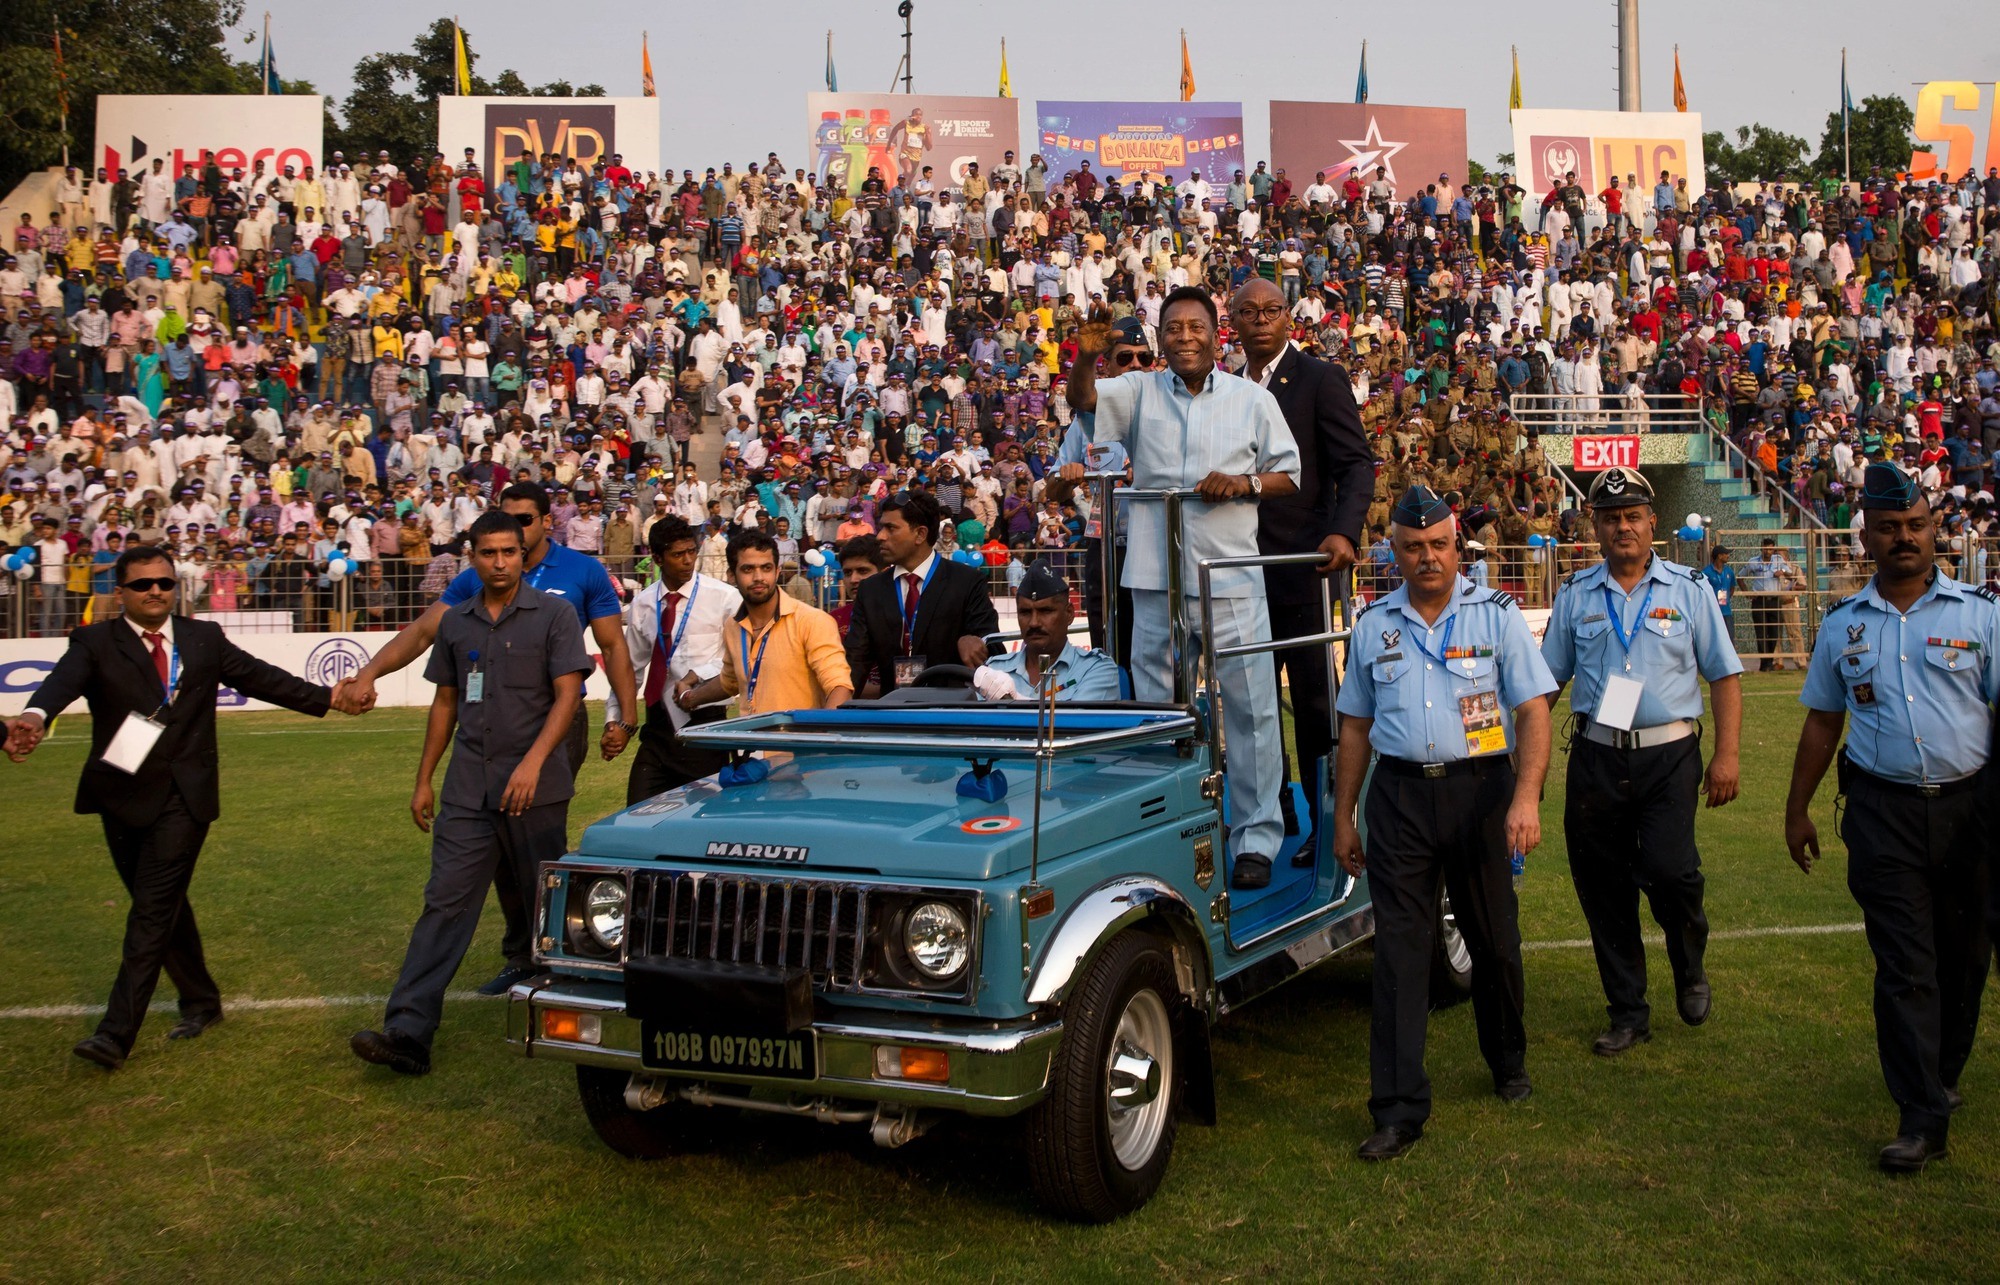 Pele được đưa đi quanh sân vận động trong một chiếc xe mui trần khi tham dự trận đấu Subroto Cup ở New Delhi, Ấn Độ, ngày 16 tháng 10 năm 2015. [Ảnh: Saurabh Das/AP]